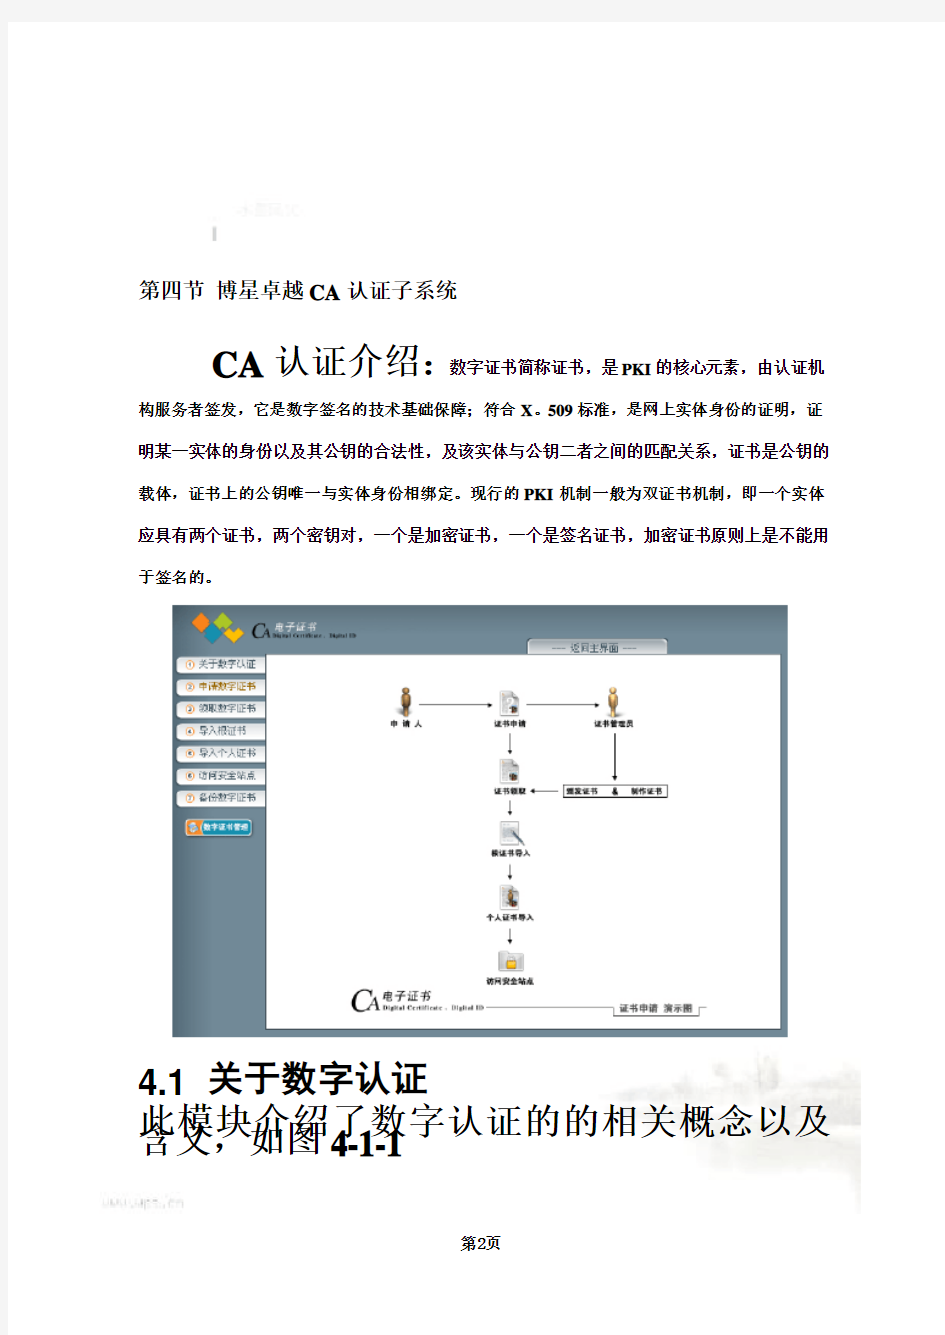 博星卓越电子商务教学实验系统V45版使用说明书(doc 32页)